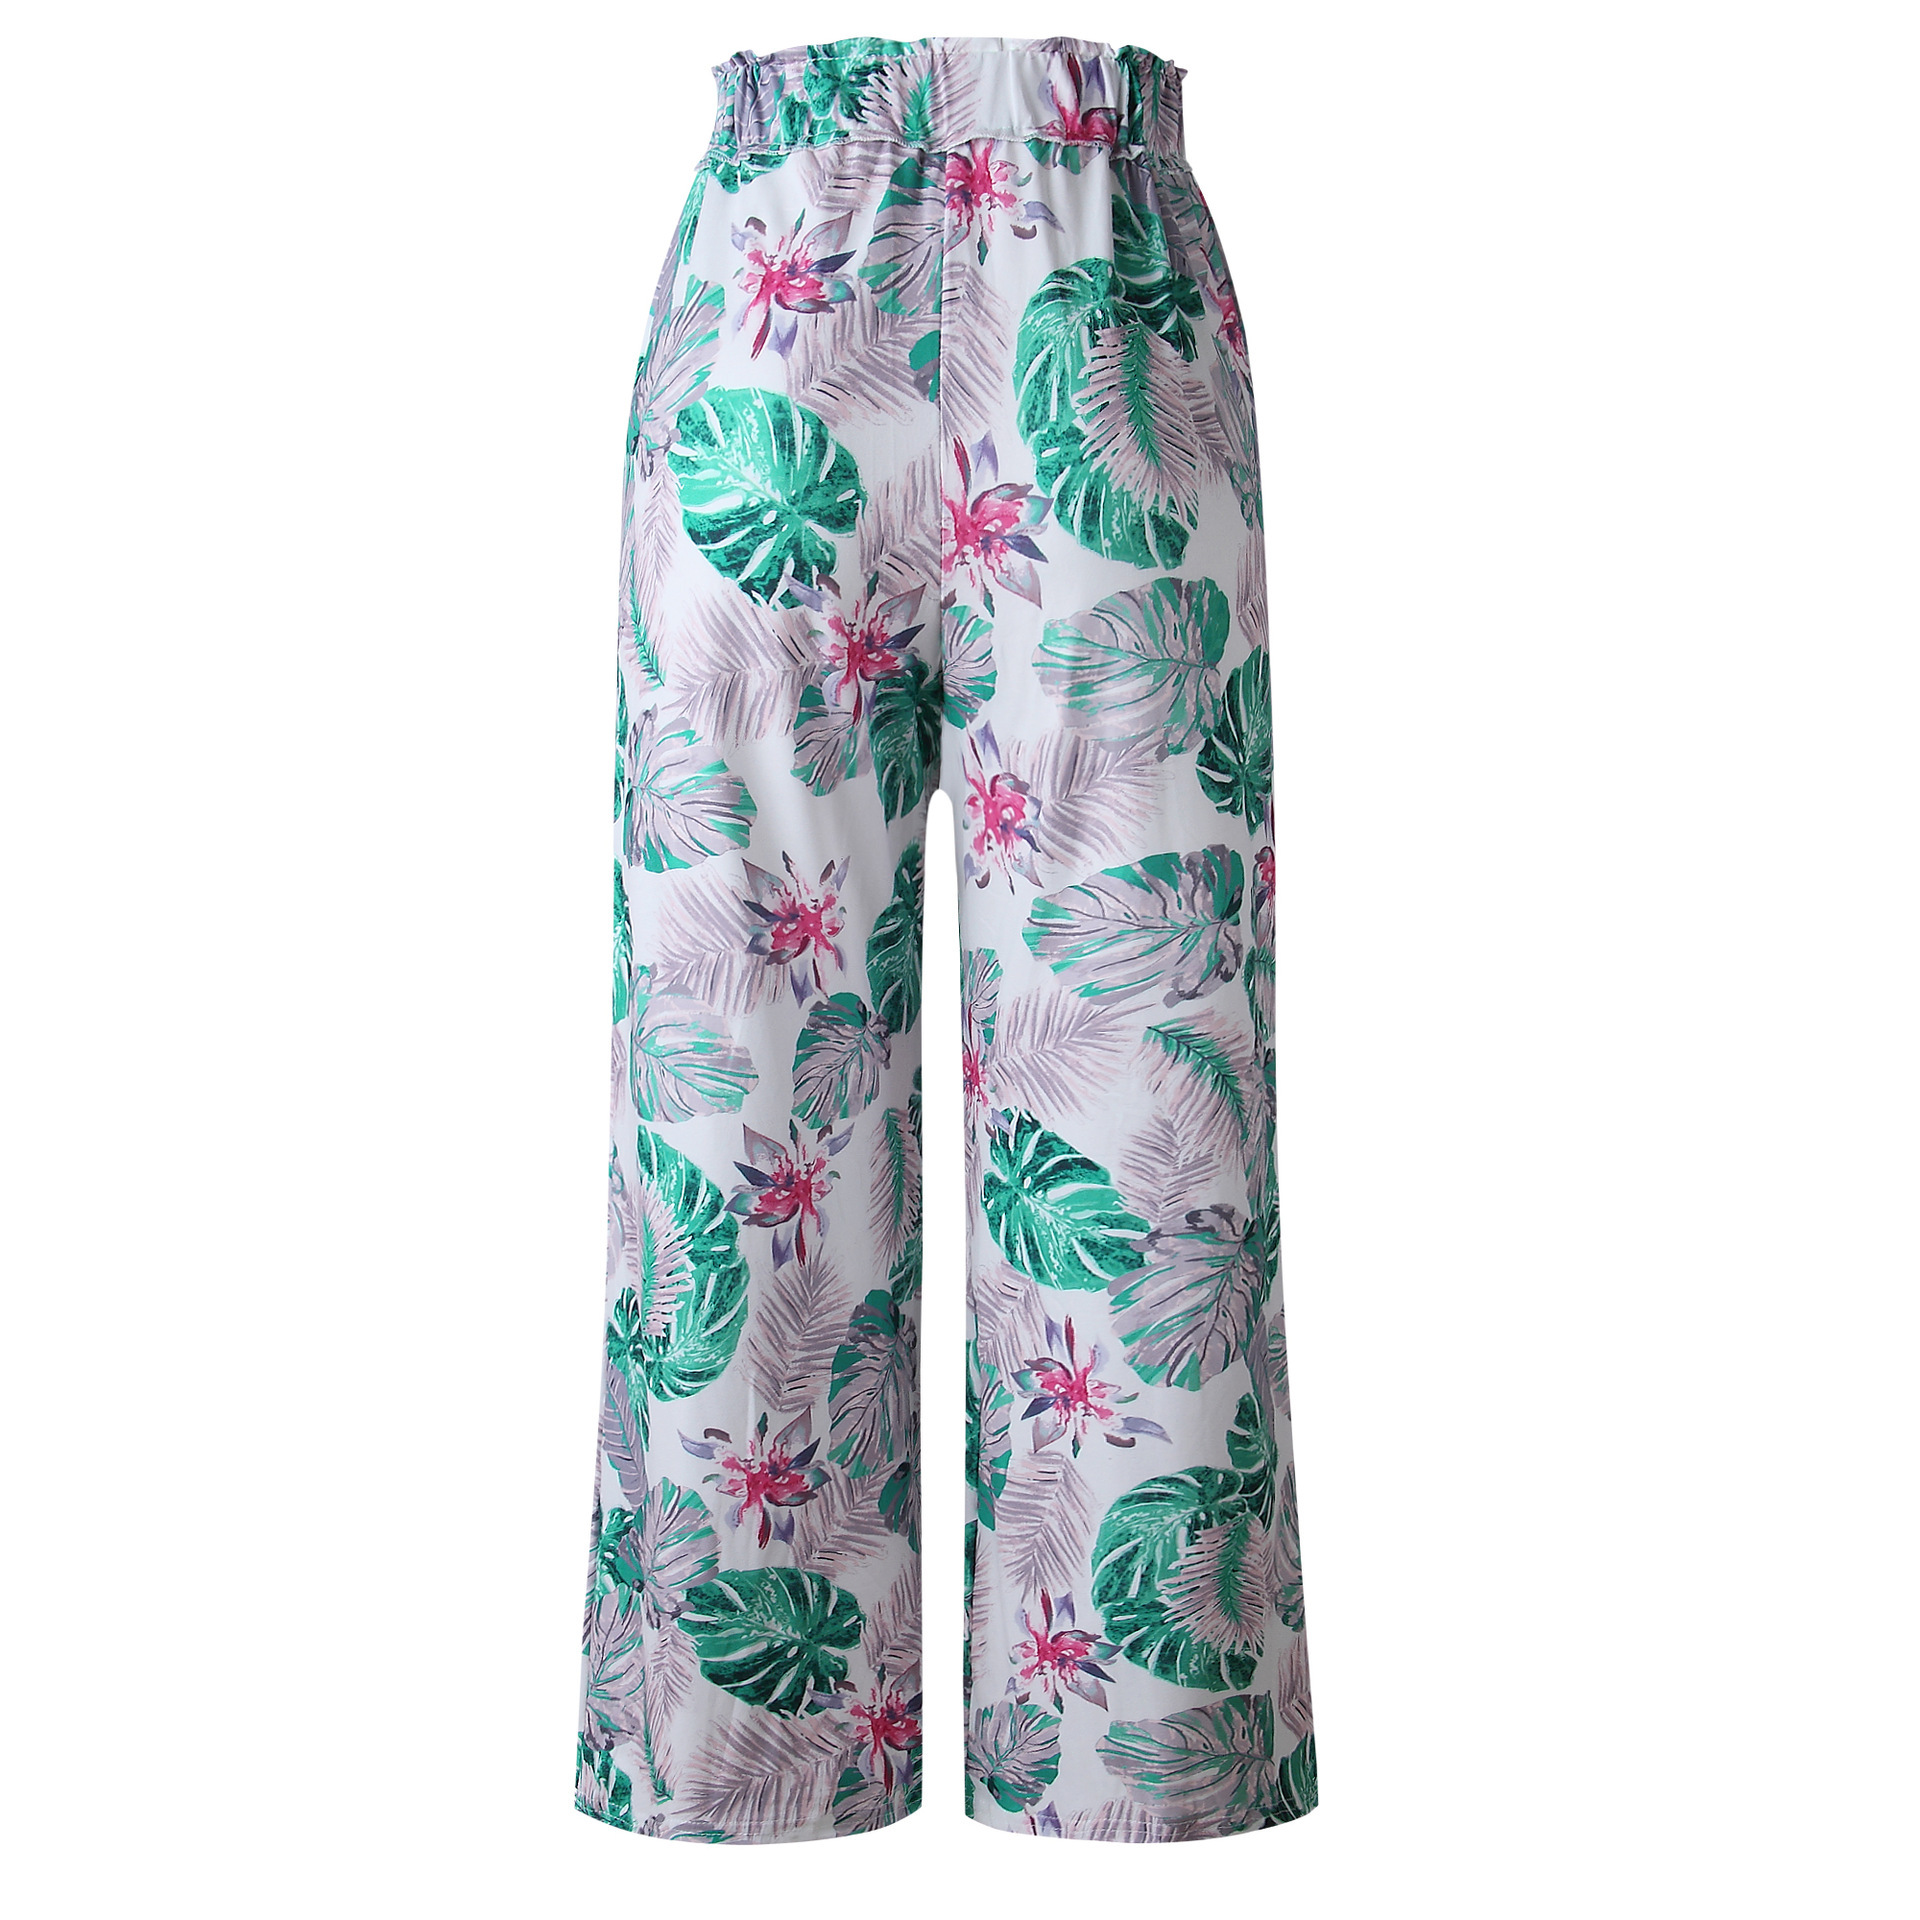 Pantalons d'estampat de fulles d'estiu 2021 Pantalons còmodes transpirables frescos Pantalons llargs de cintura elàstica de platja